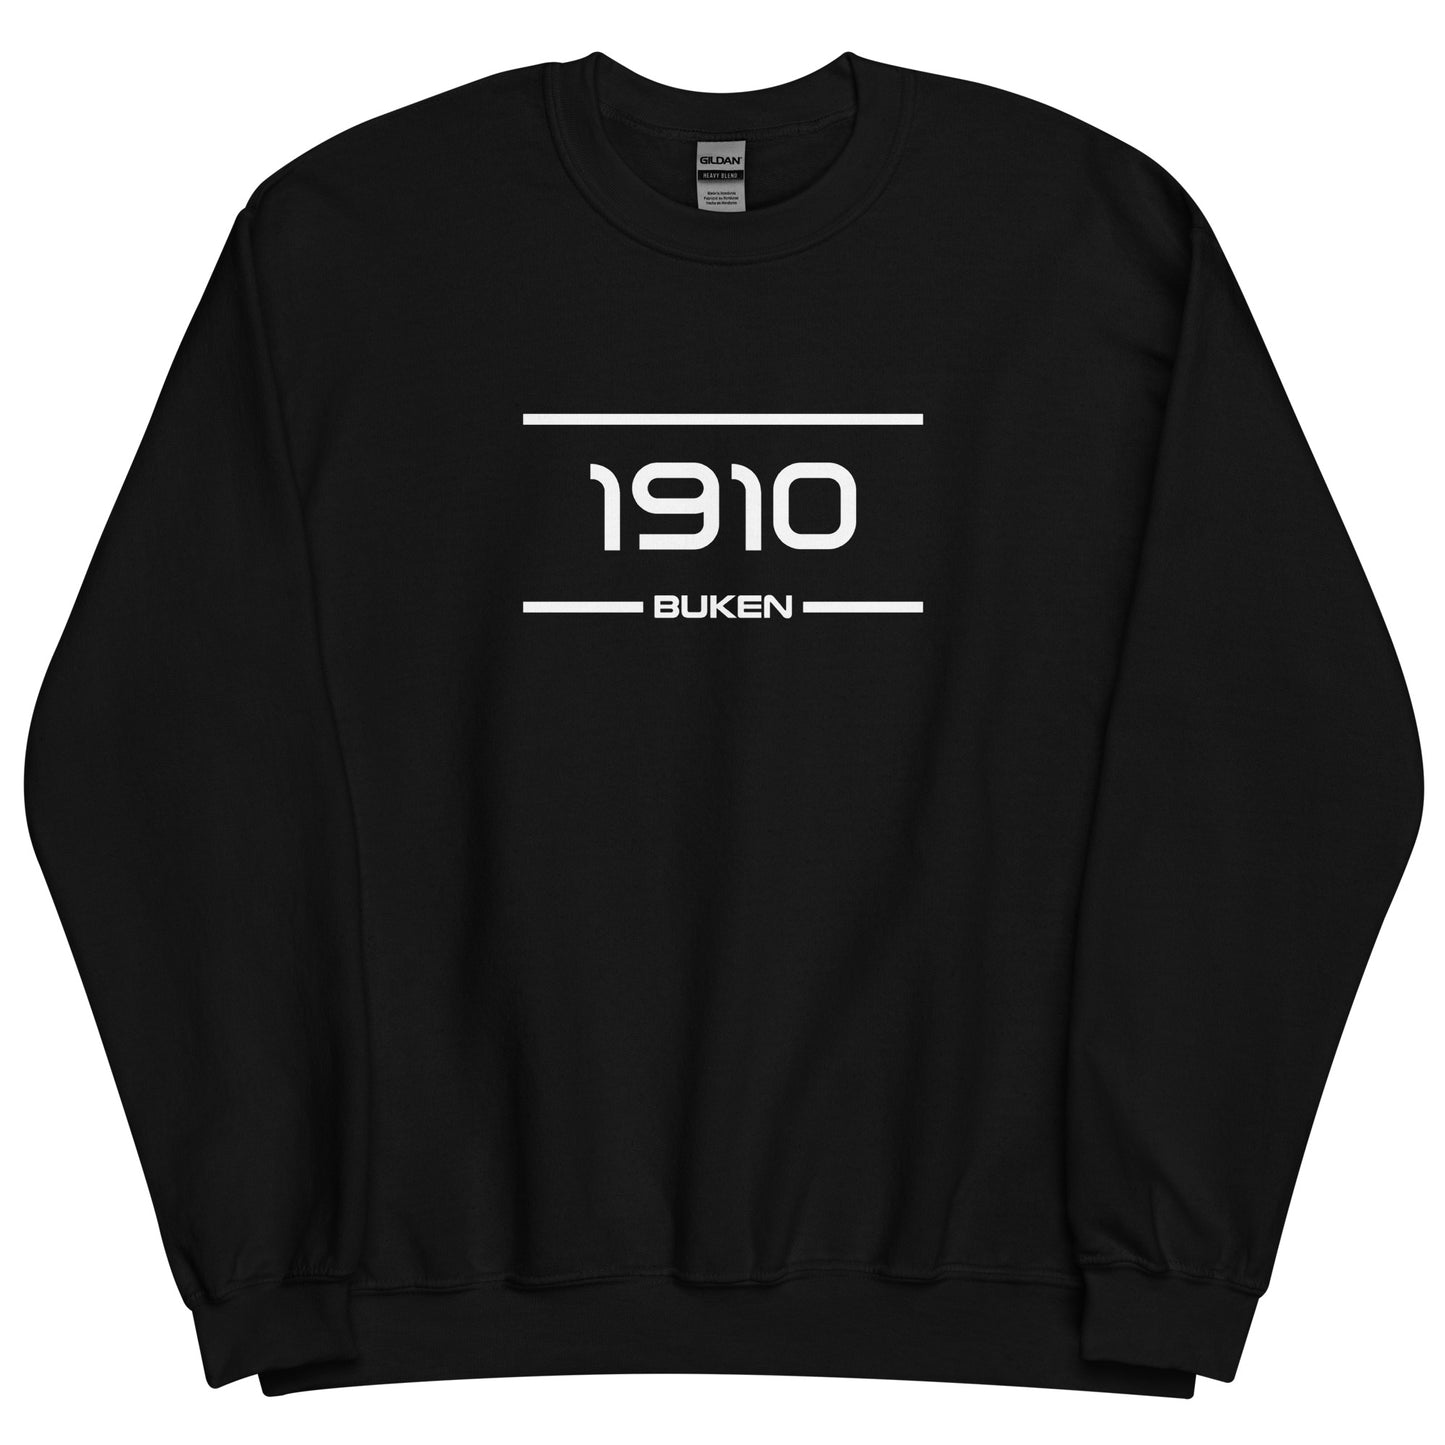 Sweater - 1910 - Buken (M/V)